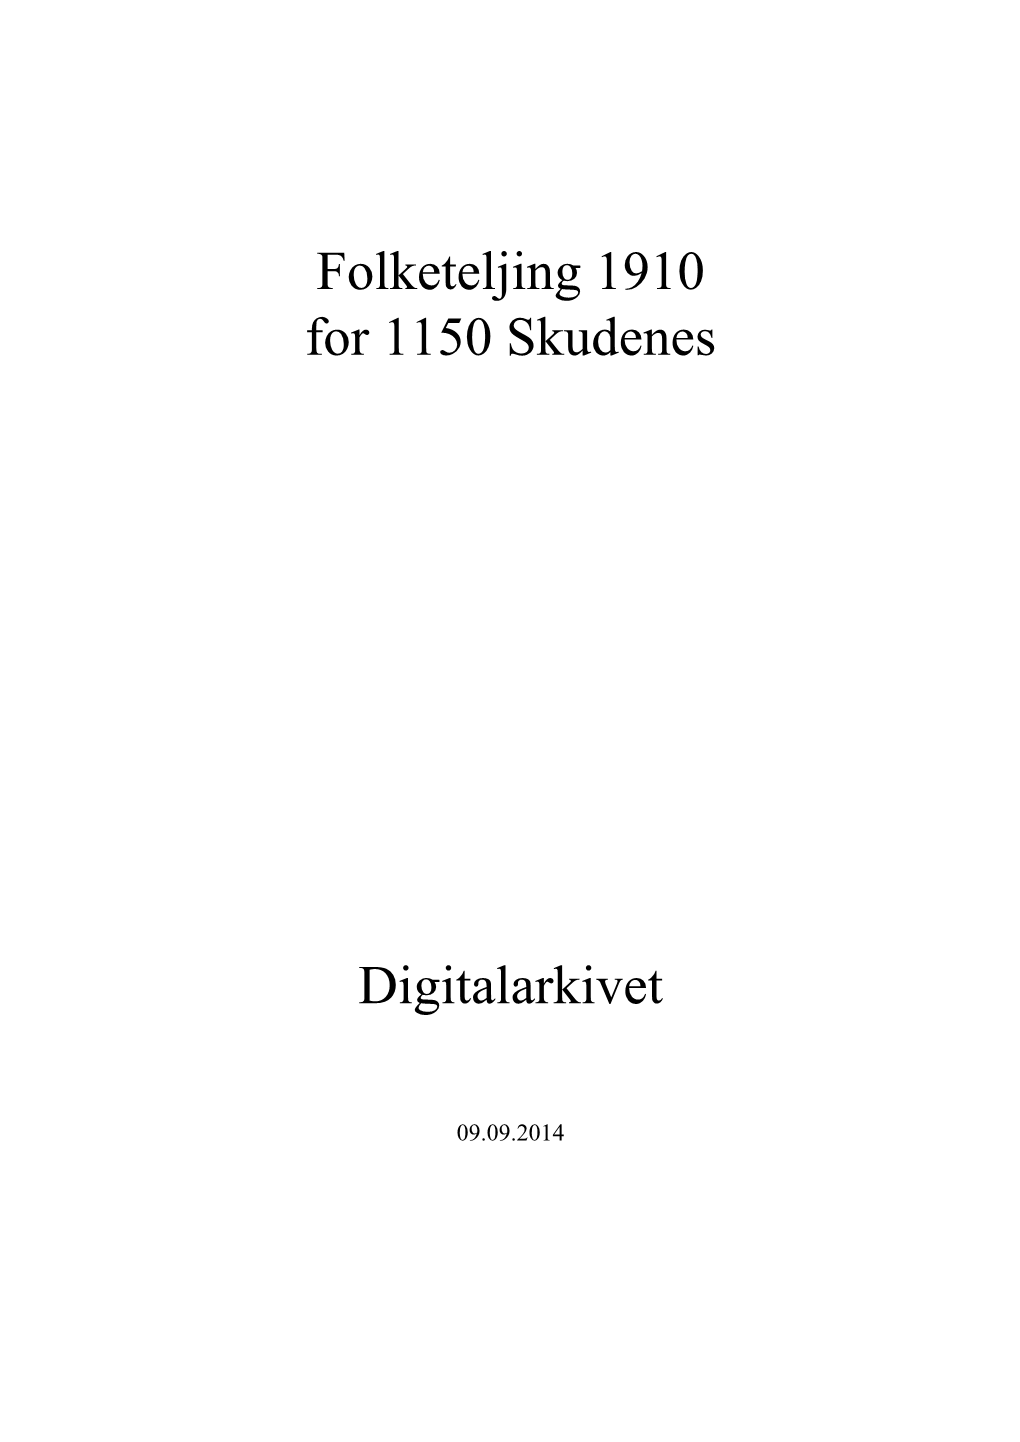 Folketeljing 1910 for 1150 Skudenes Digitalarkivet